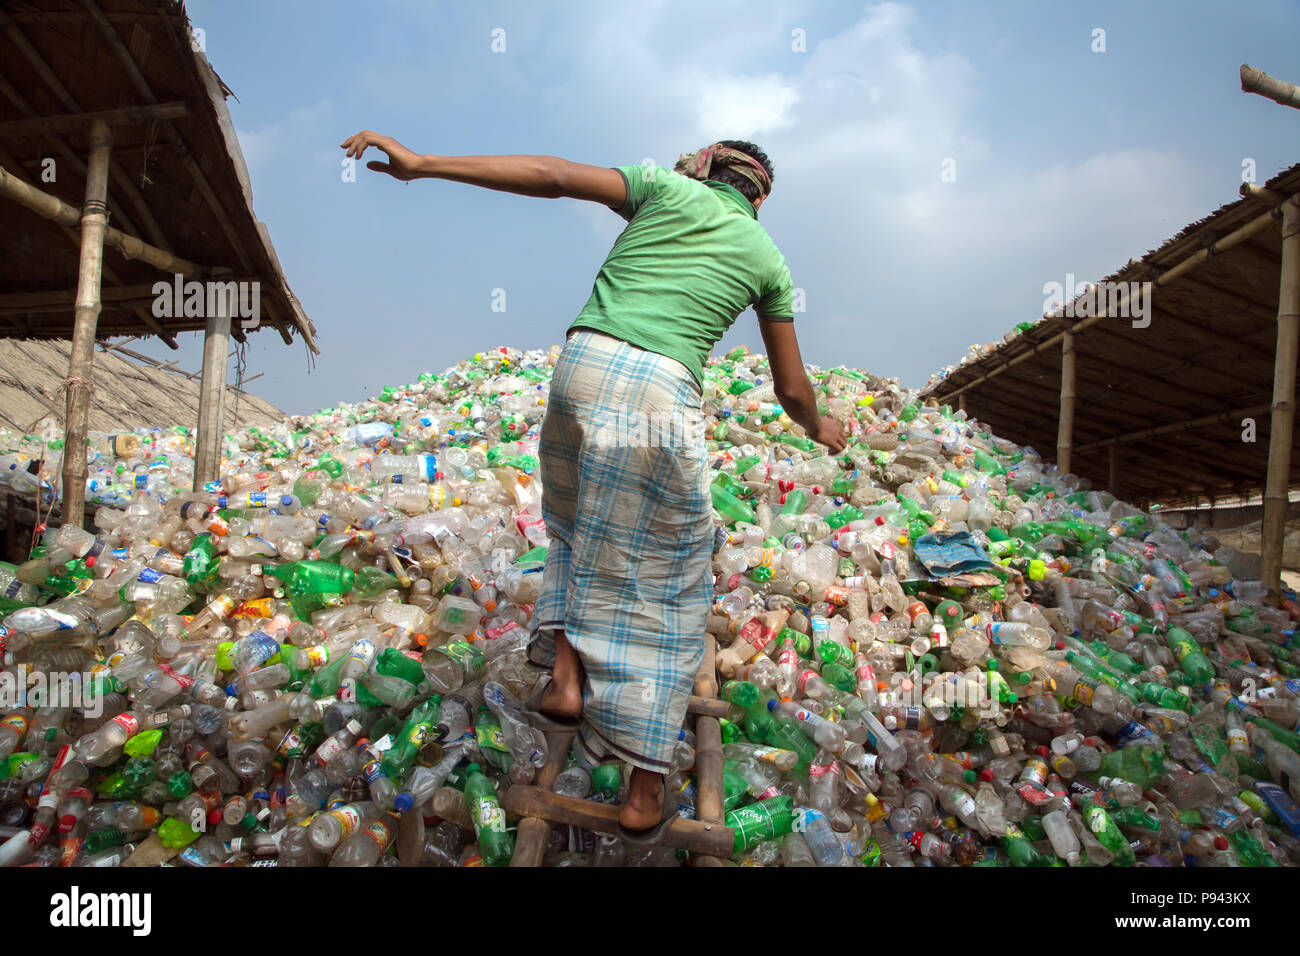 Magazzino di plastica di riciclo in Hazaribagh, Dacca in Bangladesh Foto Stock